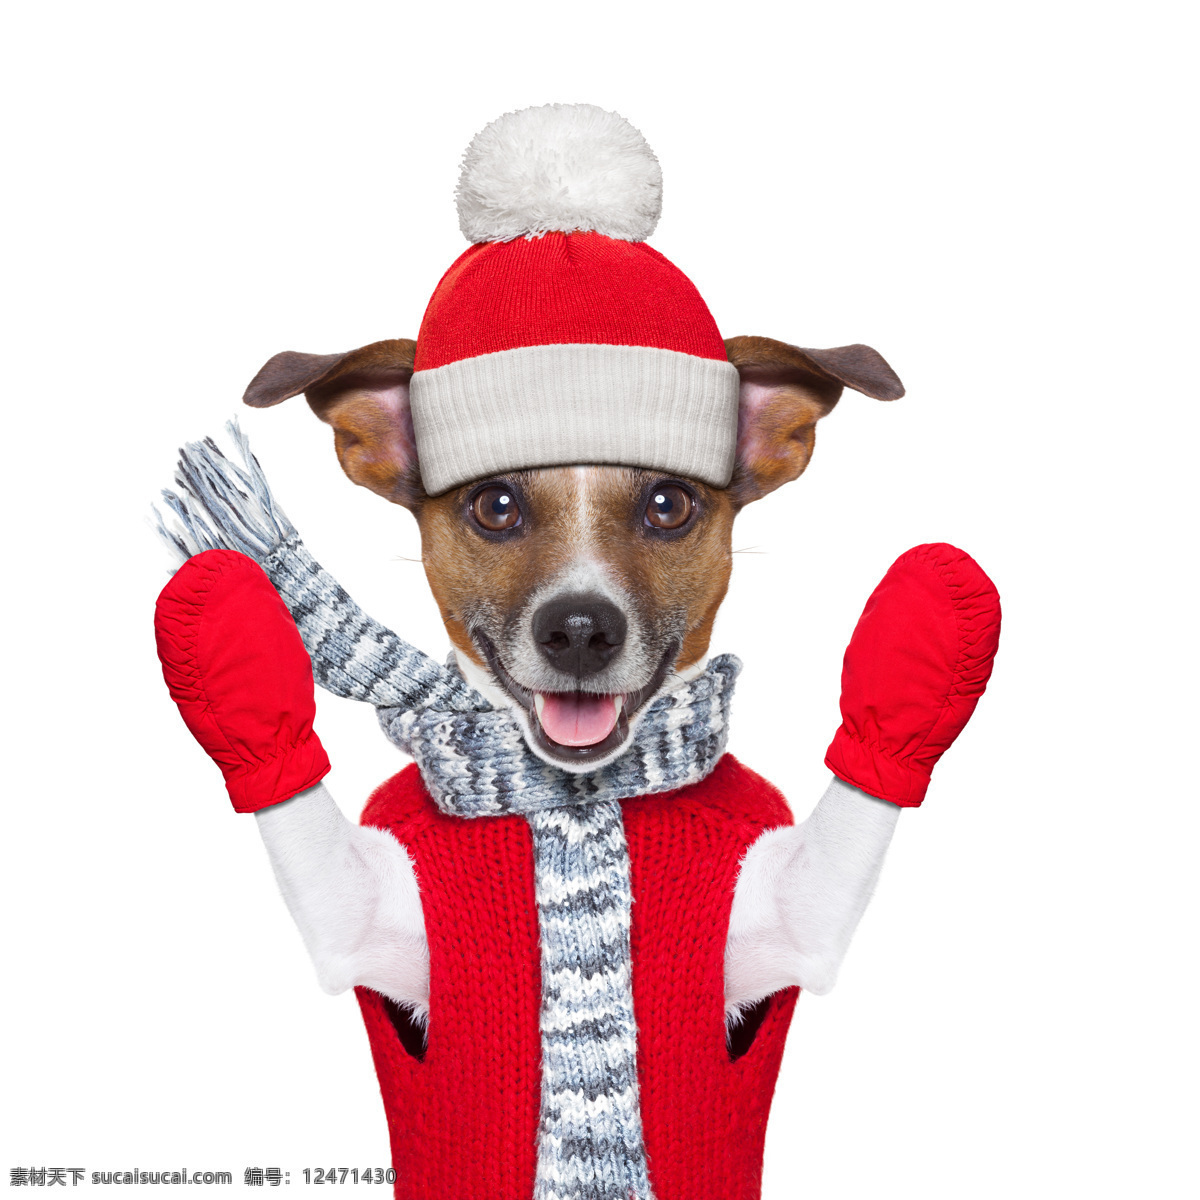 圣诞小狗 圣诞狗 创意摄影 广告摄影 广告大片 可爱宠物 小狗 狗狗 宠物狗 宠物摄影 家禽家畜 生物世界